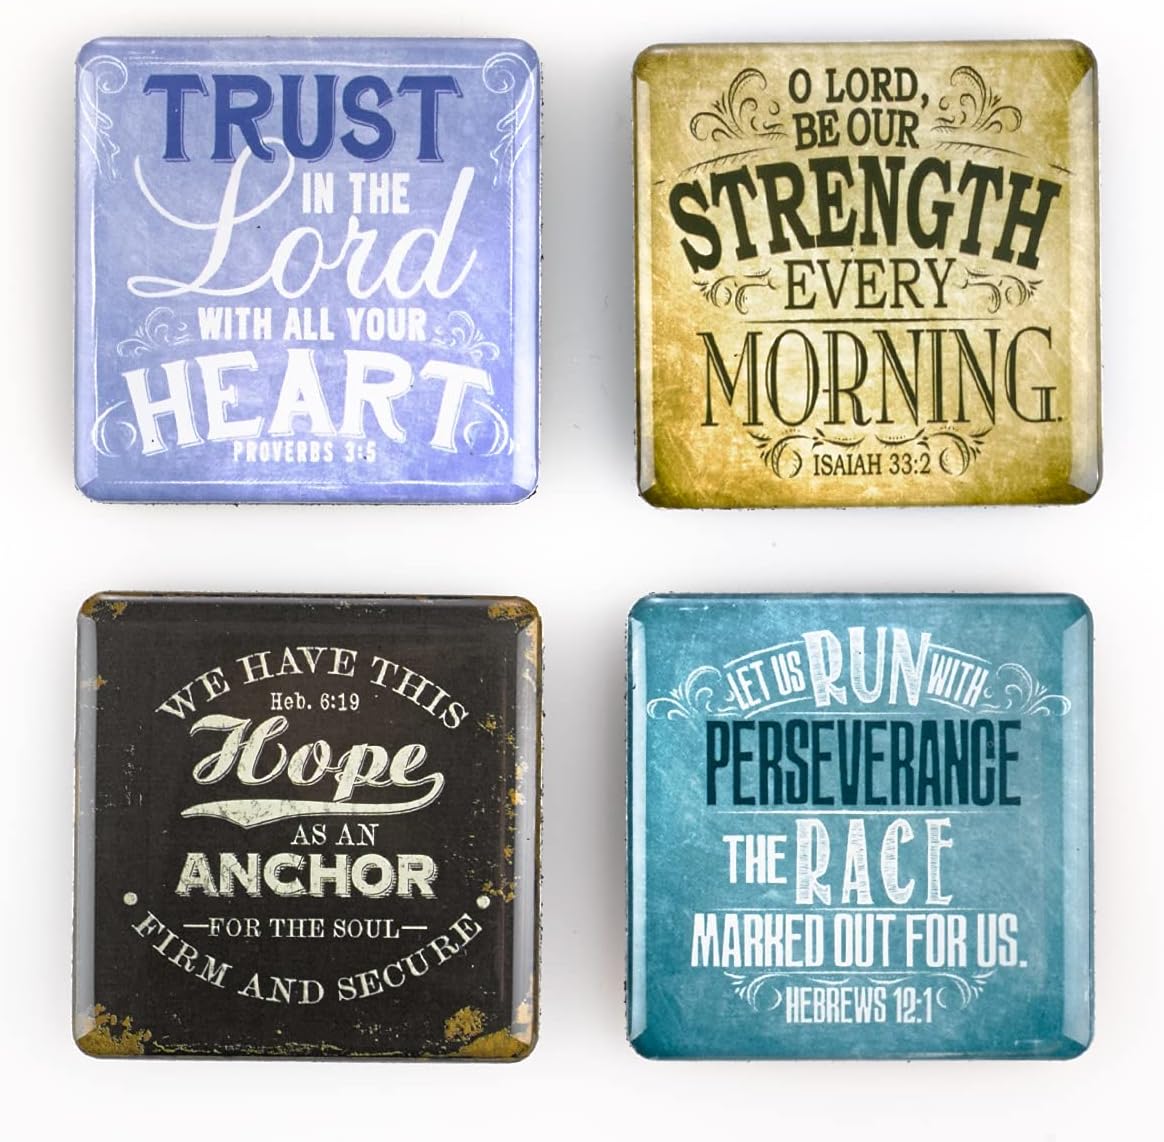 Christian Bible Fridge Magnet Set of 4 Christian Gift Idea claimedbygoddesigns